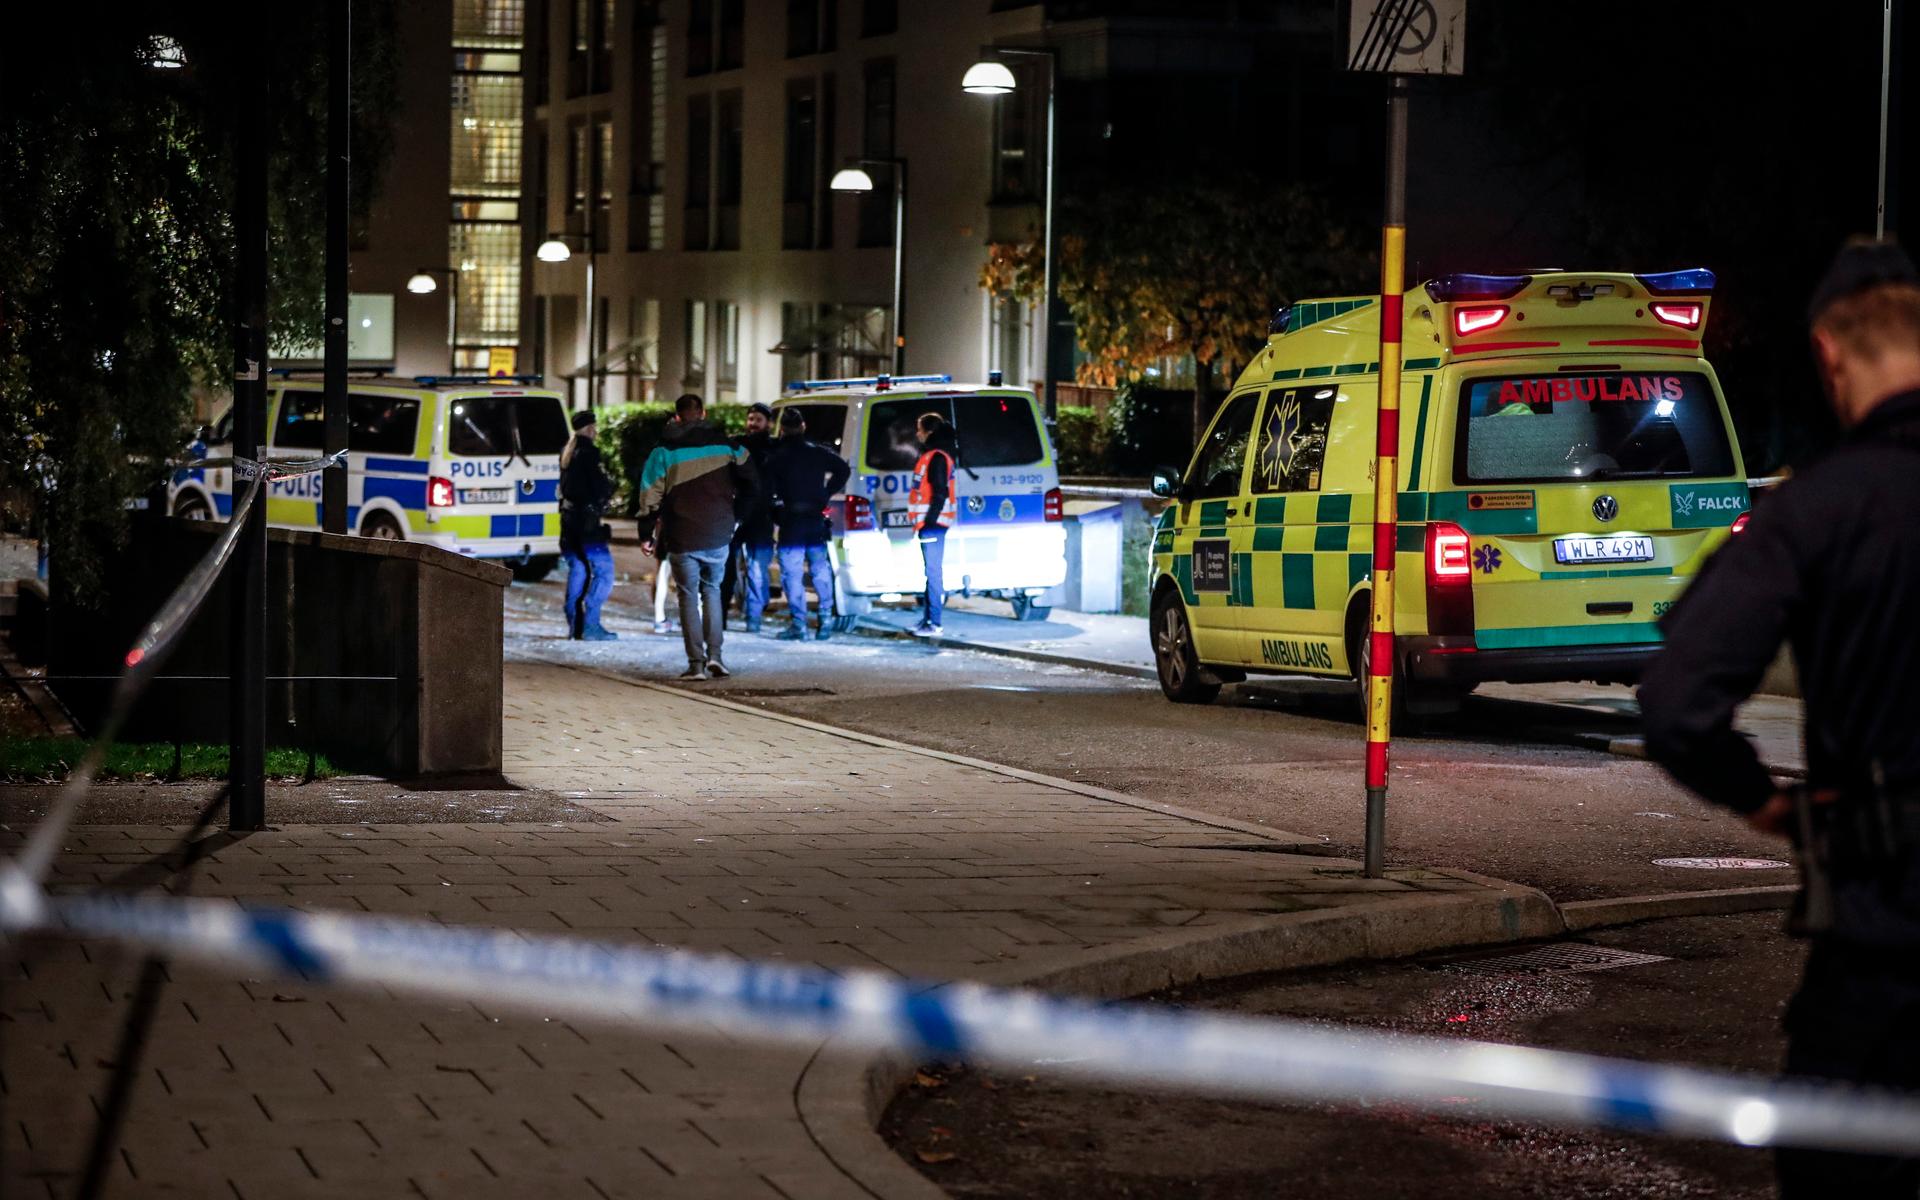 Polis och ambulans på plats i Hammarby sjöstad i södra Stockholm, där en man hittats skjuten. Mannen, som enligt uppgifter till Sveriges största medier är rapparen Einár, avled senare av sina skador.